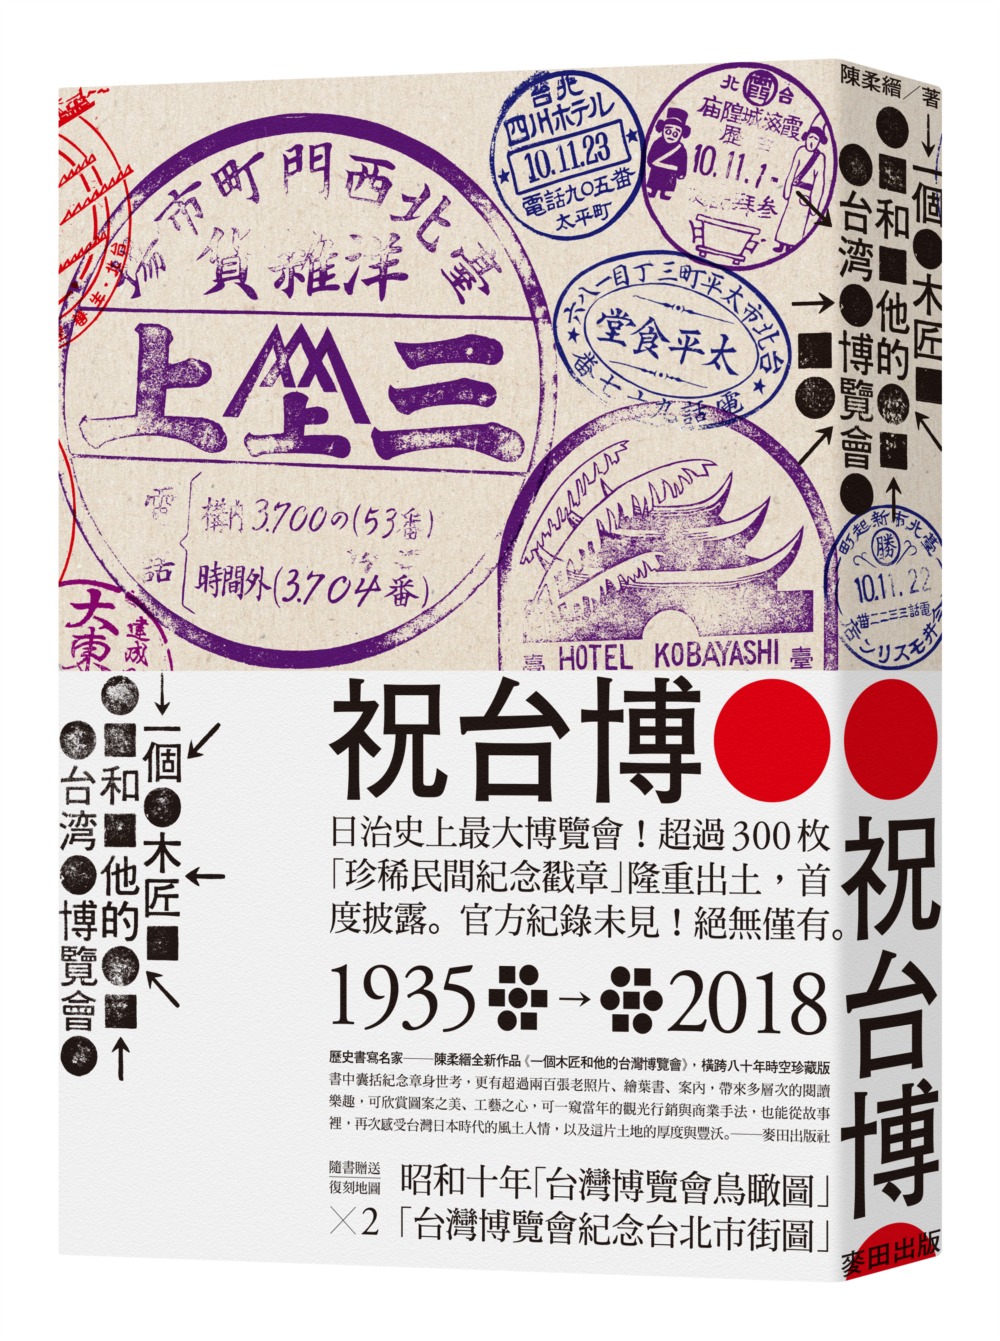 一個木匠和他的台灣博覽會(附1935年『台灣博覽會紀念台北市街圖』、『台灣博覽會鳥瞰圖』復刻版古地圖